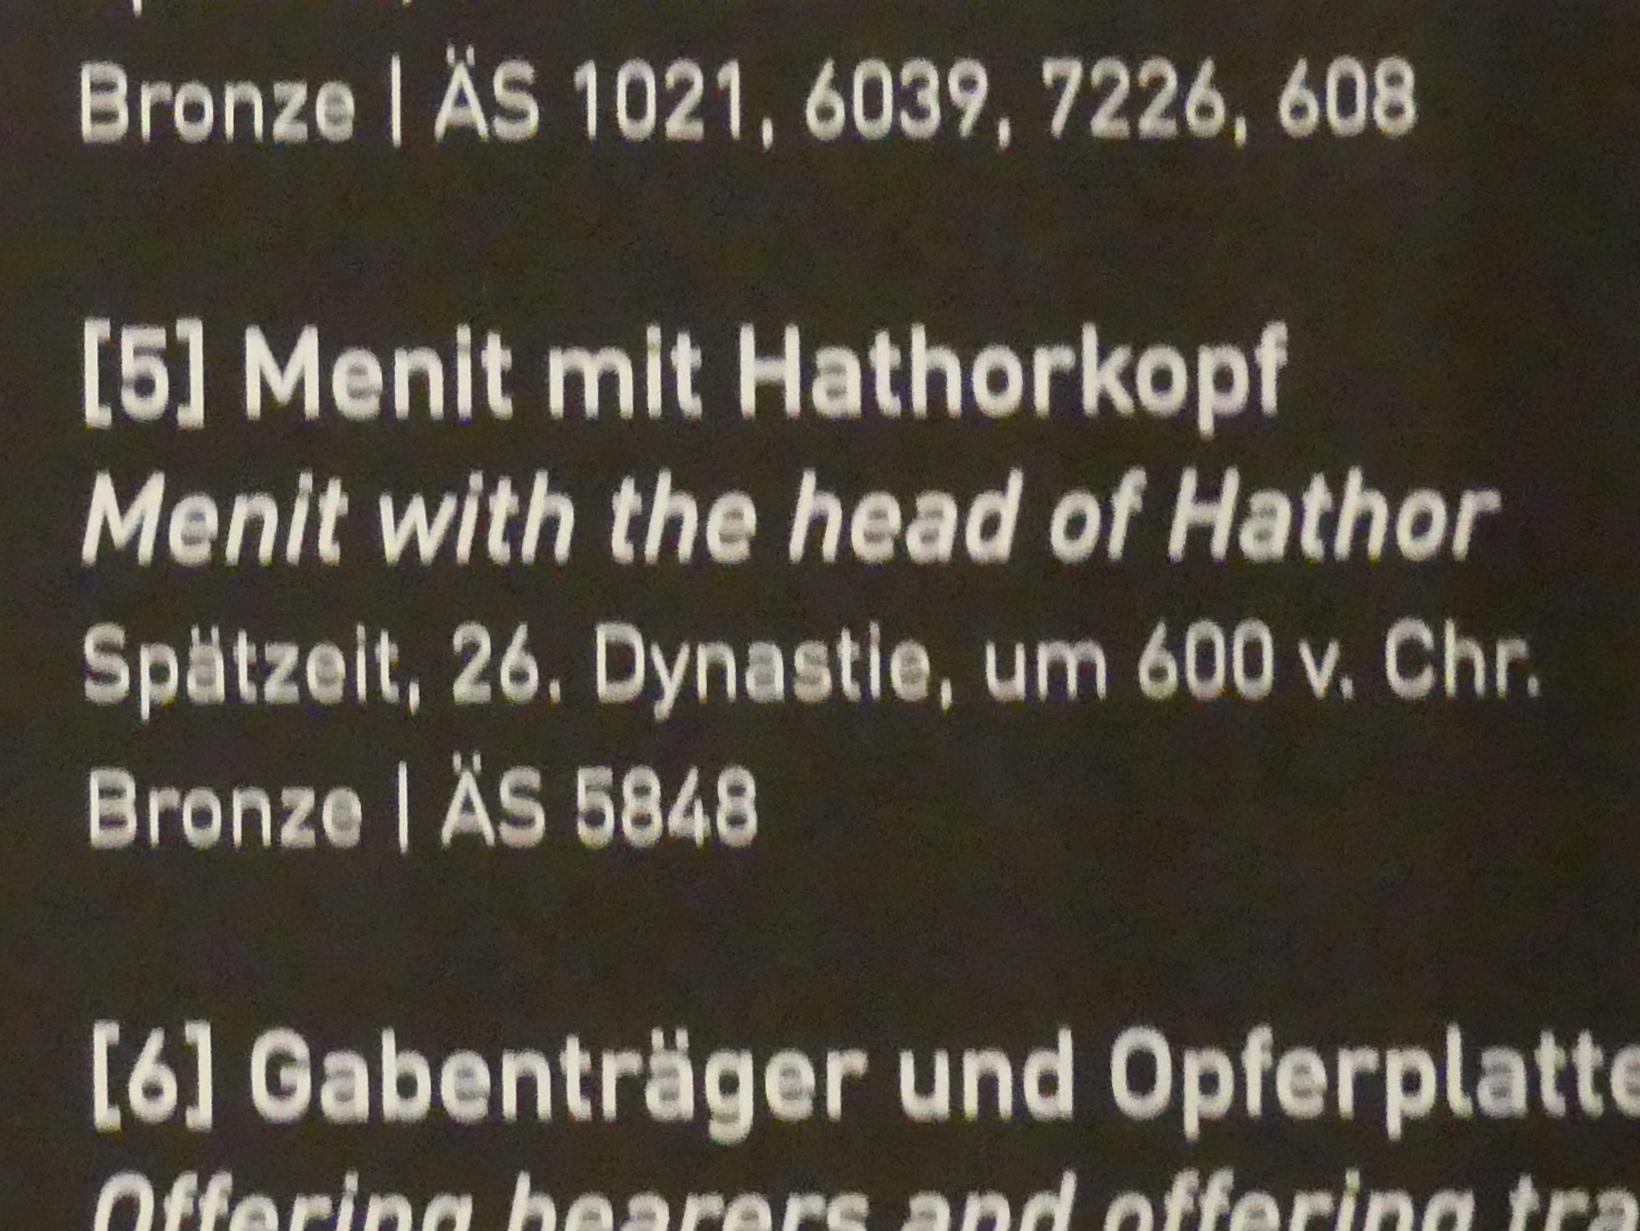 Menit mit Hathorkopf, 26. Dynastie, 526 - 525 v. Chr., 600 v. Chr., Bild 4/4